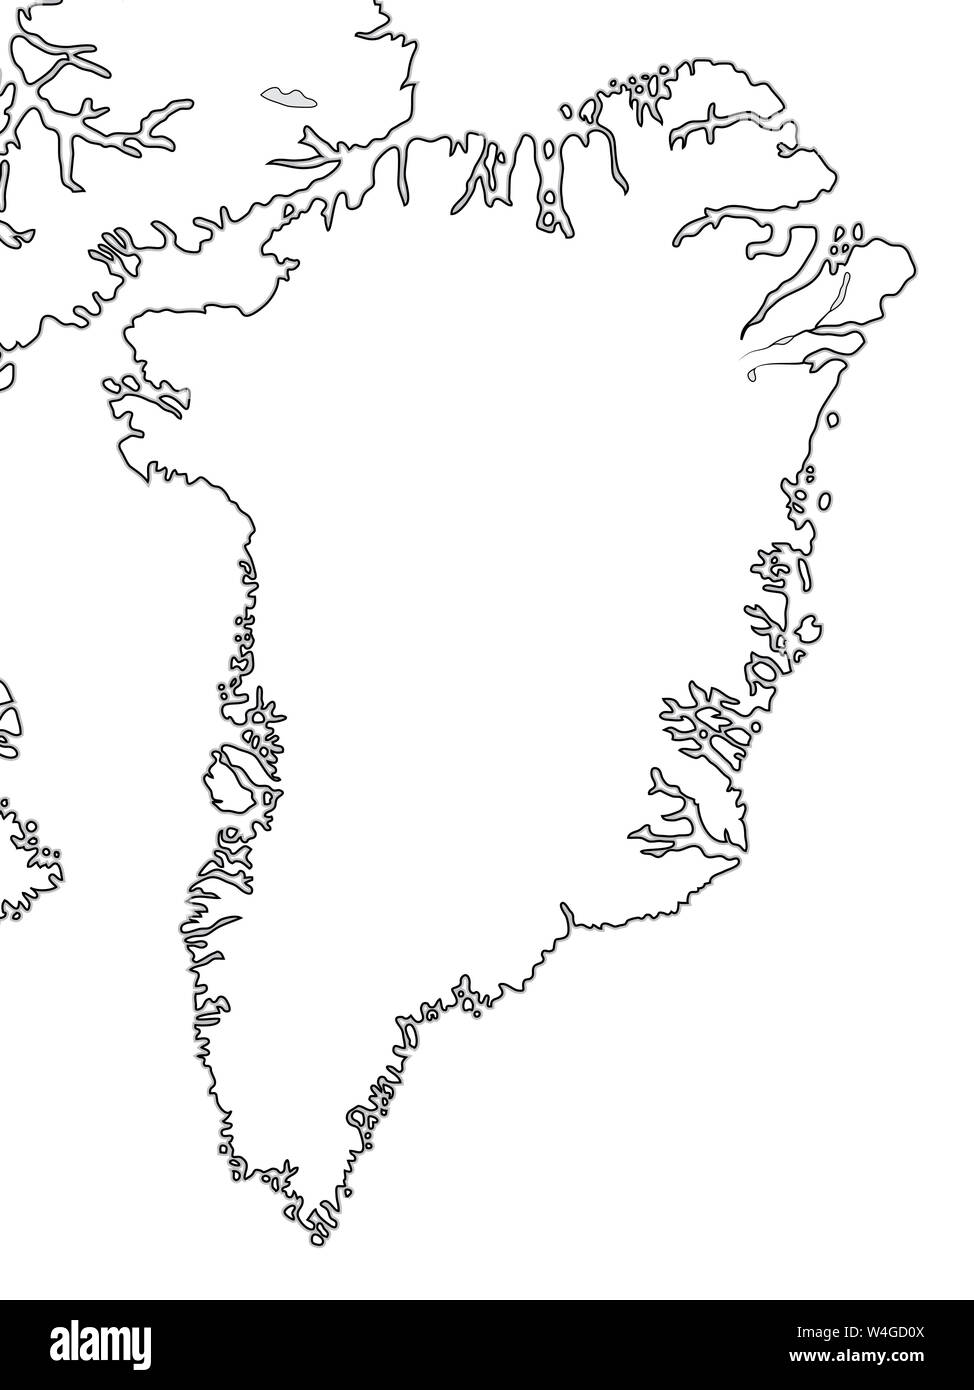 Carte du monde du Groenland : le Groenland, l'archipel Arctique, Océan Atlantique. Carte géographique avec des côtes et des îles océaniques. Banque D'Images